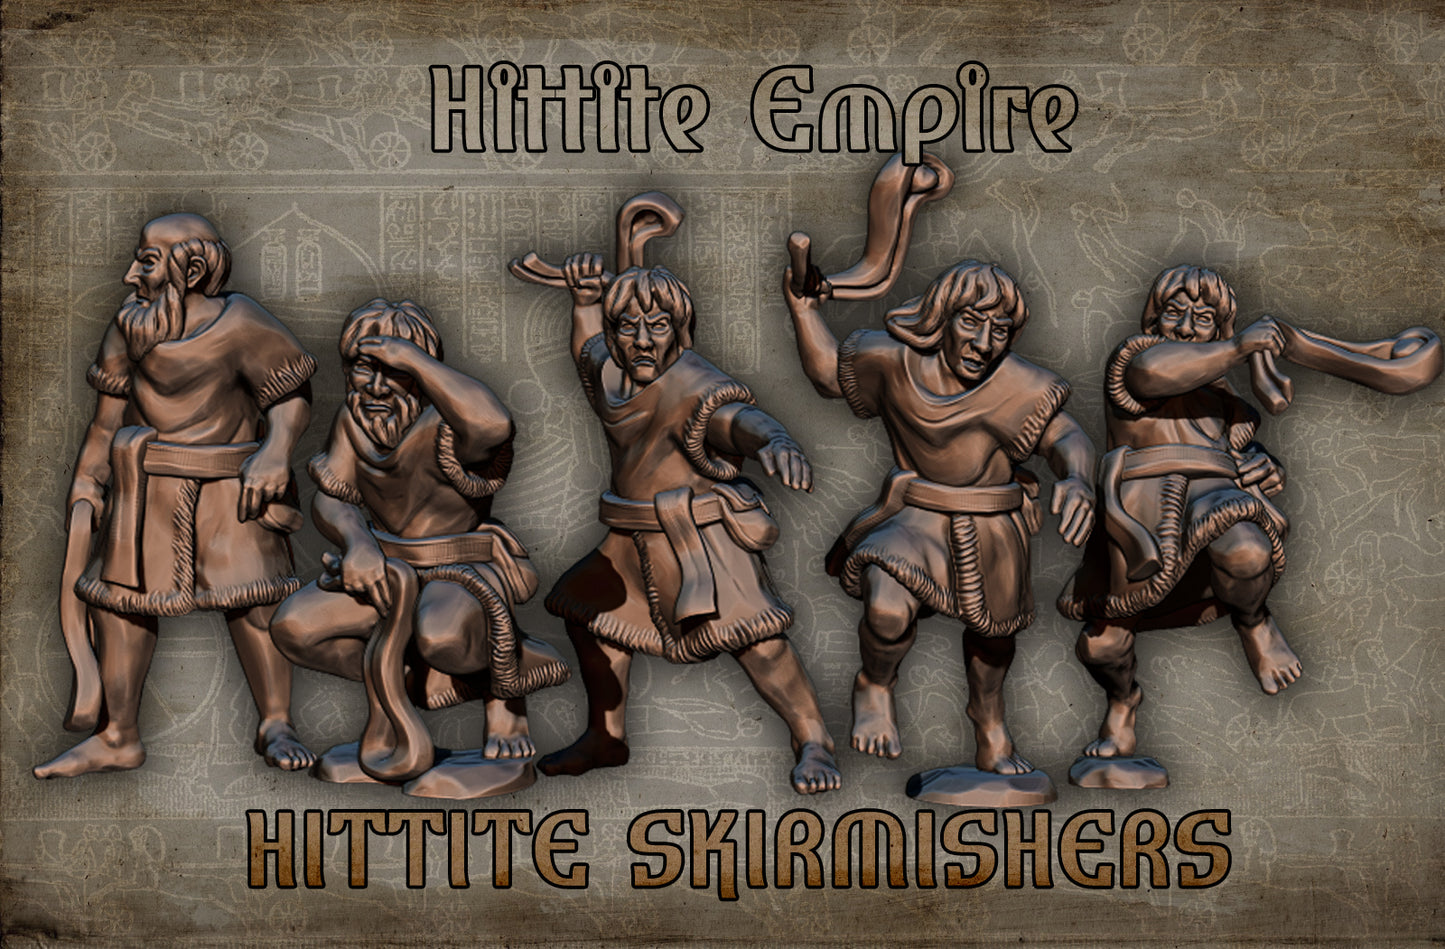 Hittite Slingers